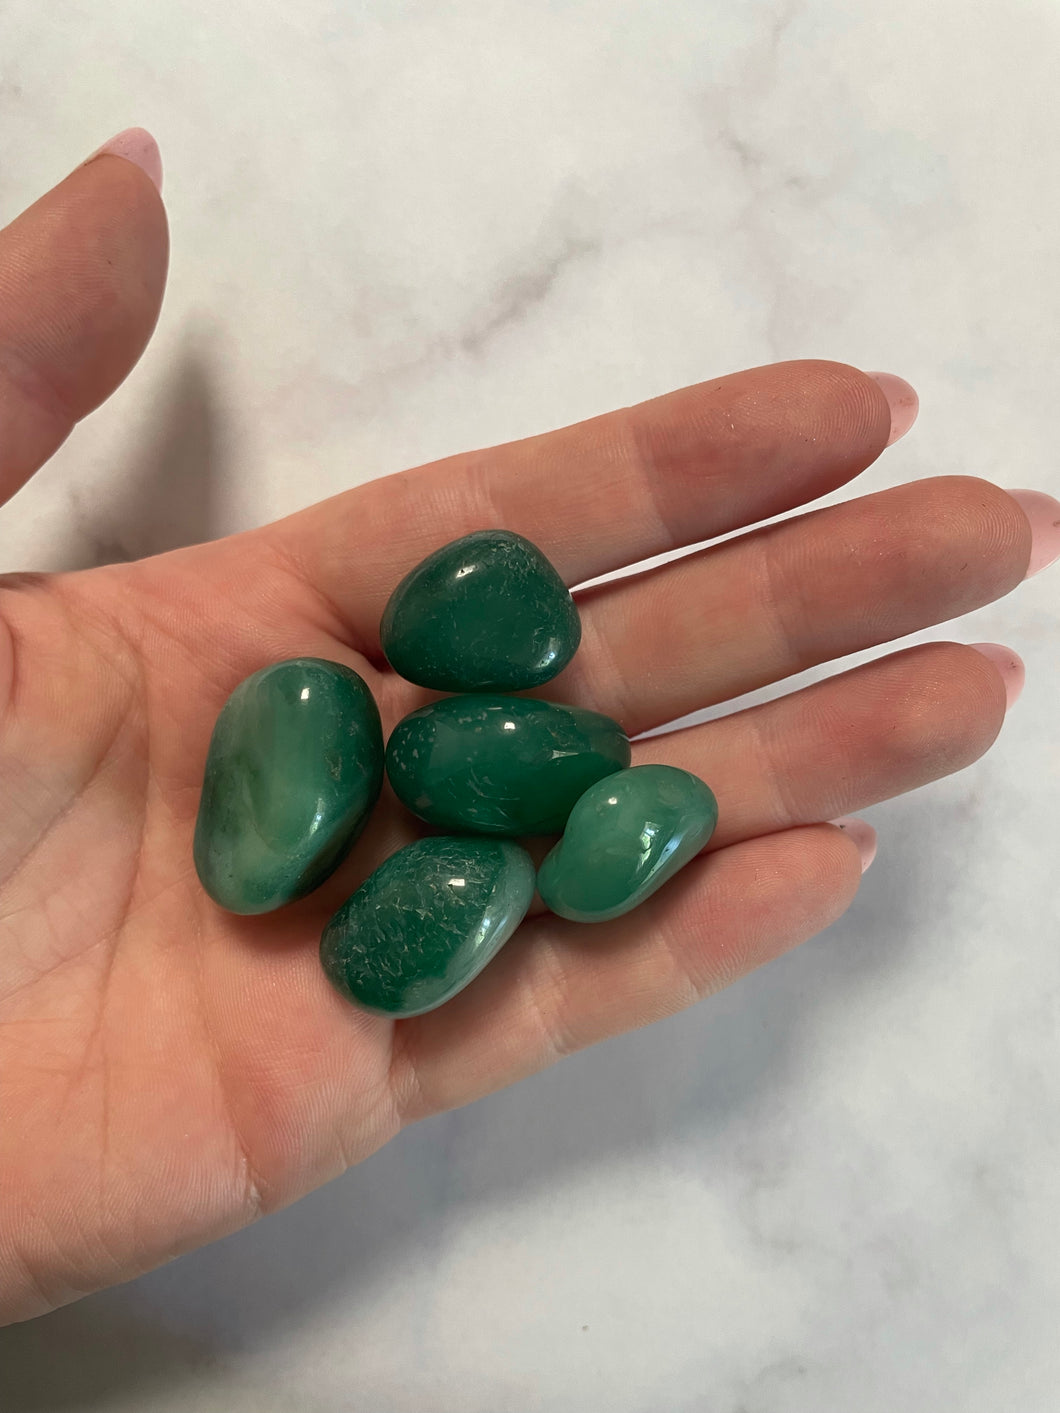 Green agate tumbled stone